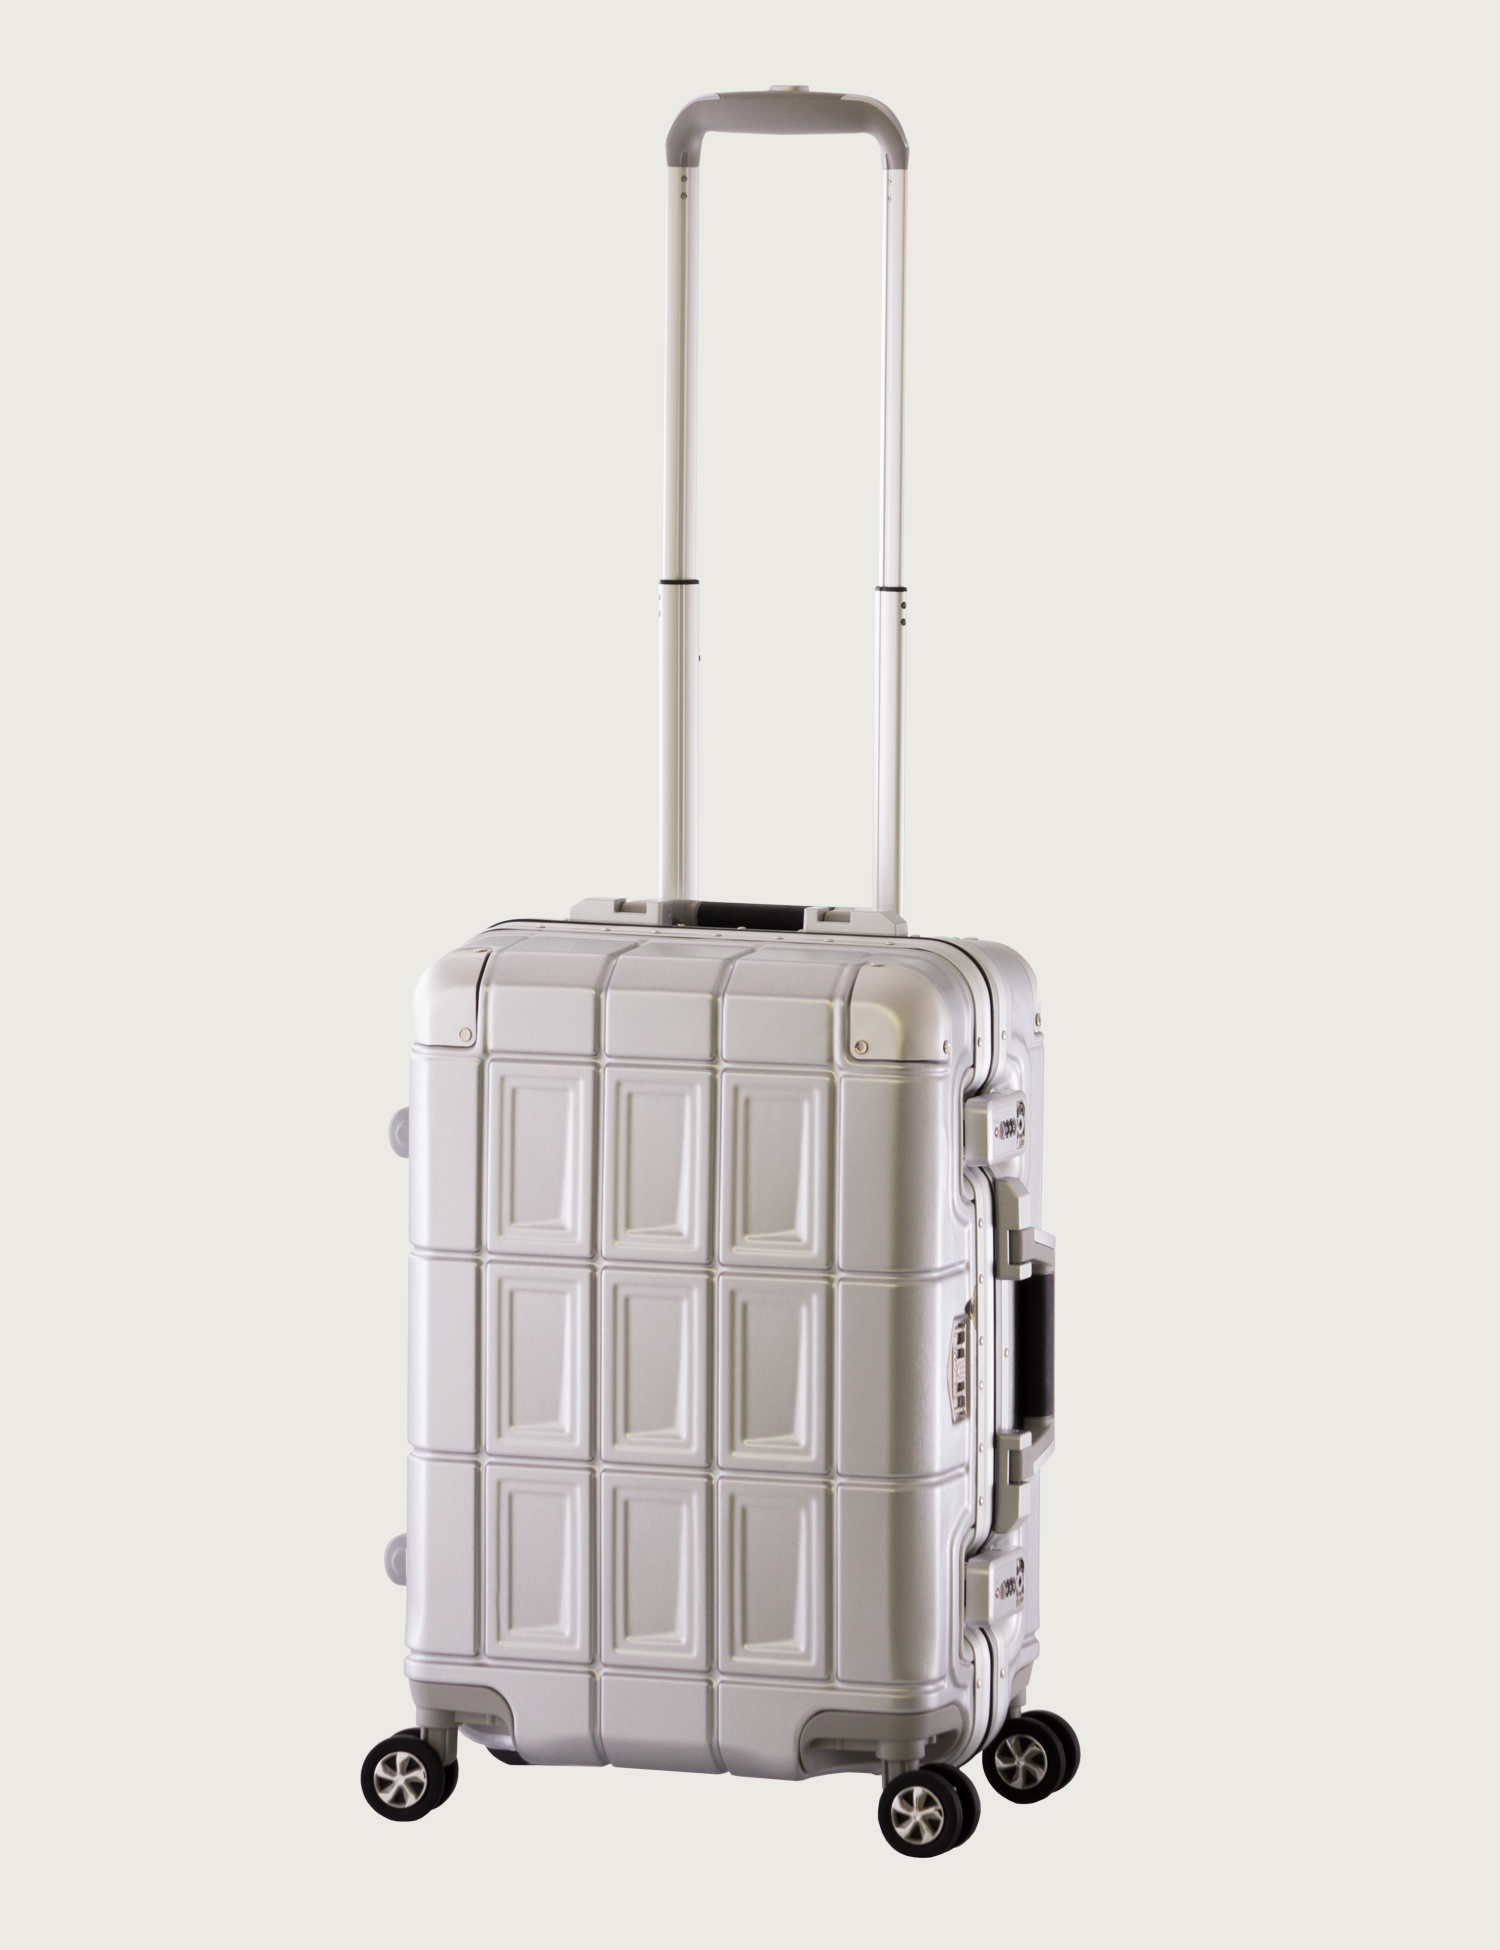 軽量 | アジア・ラゲージ 公式サイト | Asia Luggage